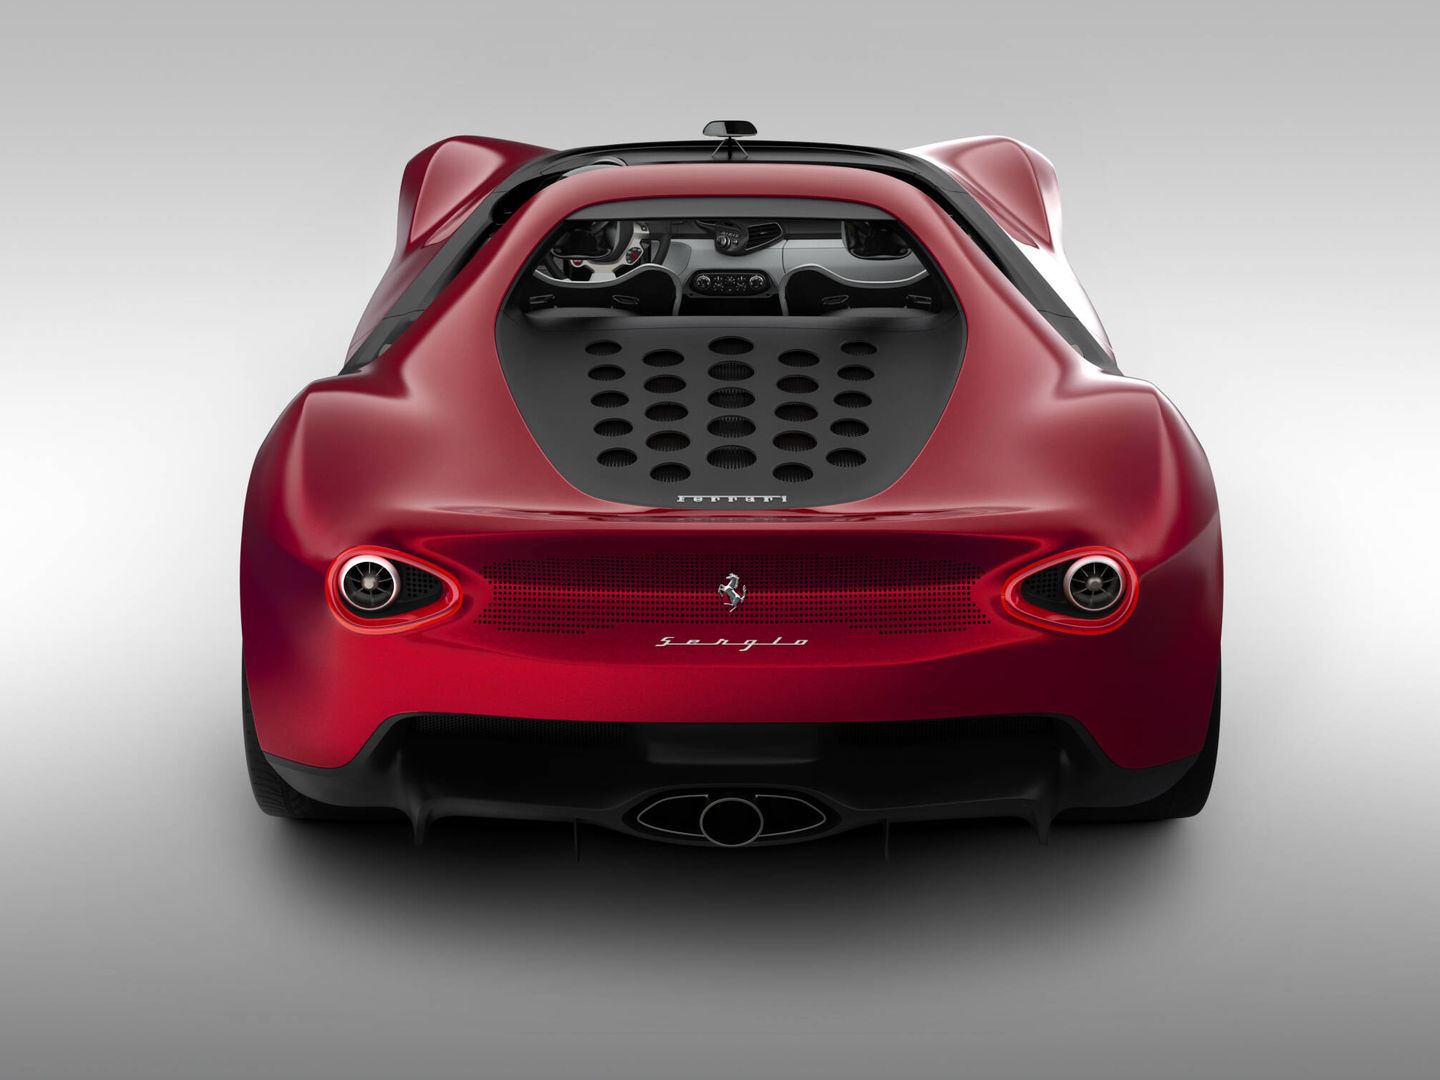 Vista posterior del Pininfarina Sergio, un 'concept car' que no pasó a la producción en serie.